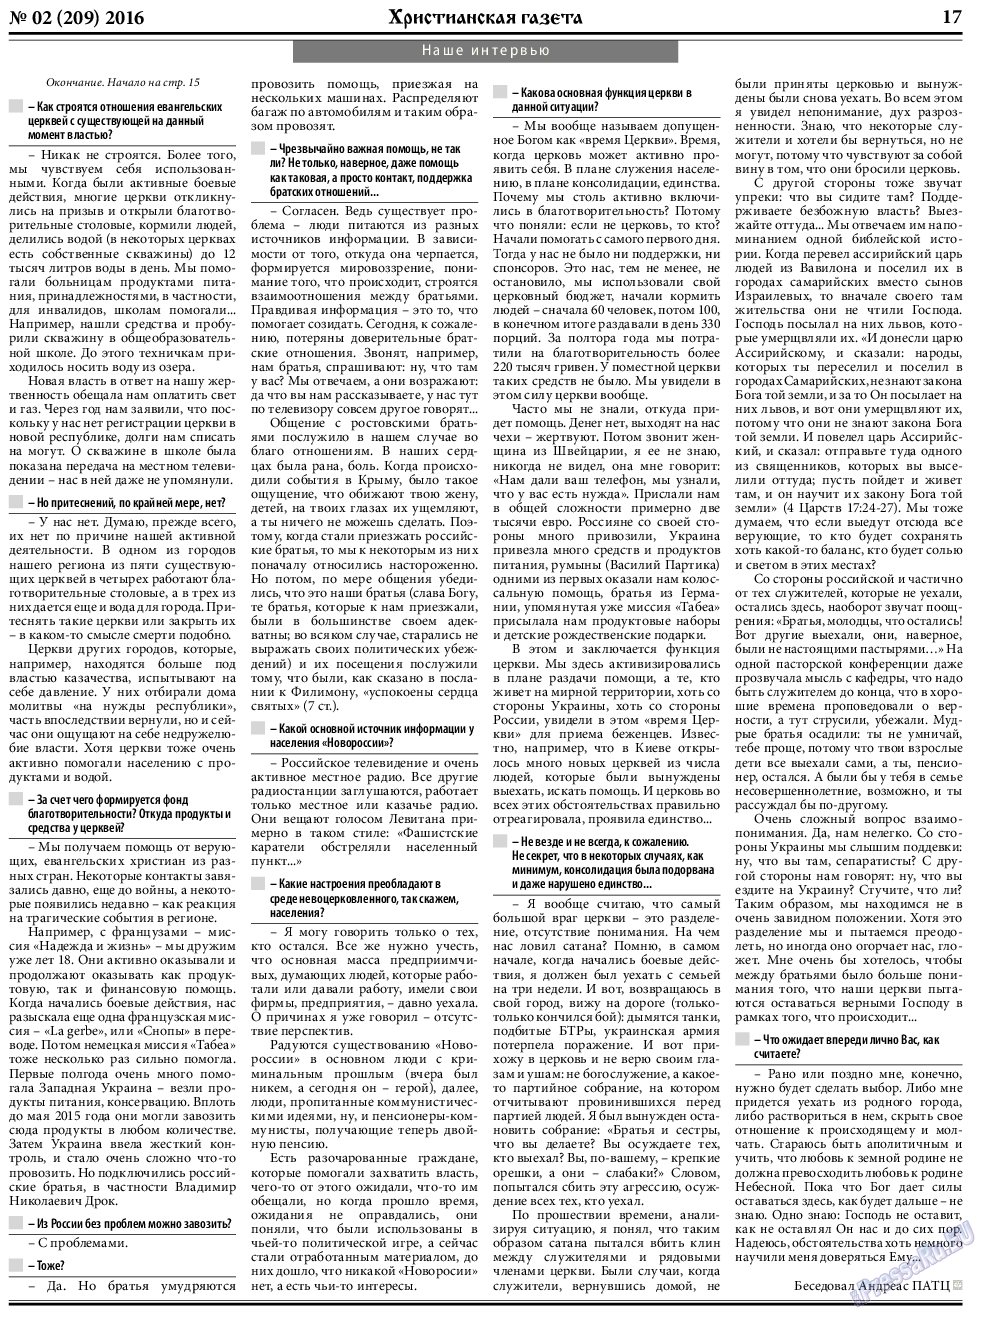 Христианская газета, газета. 2016 №2 стр.25